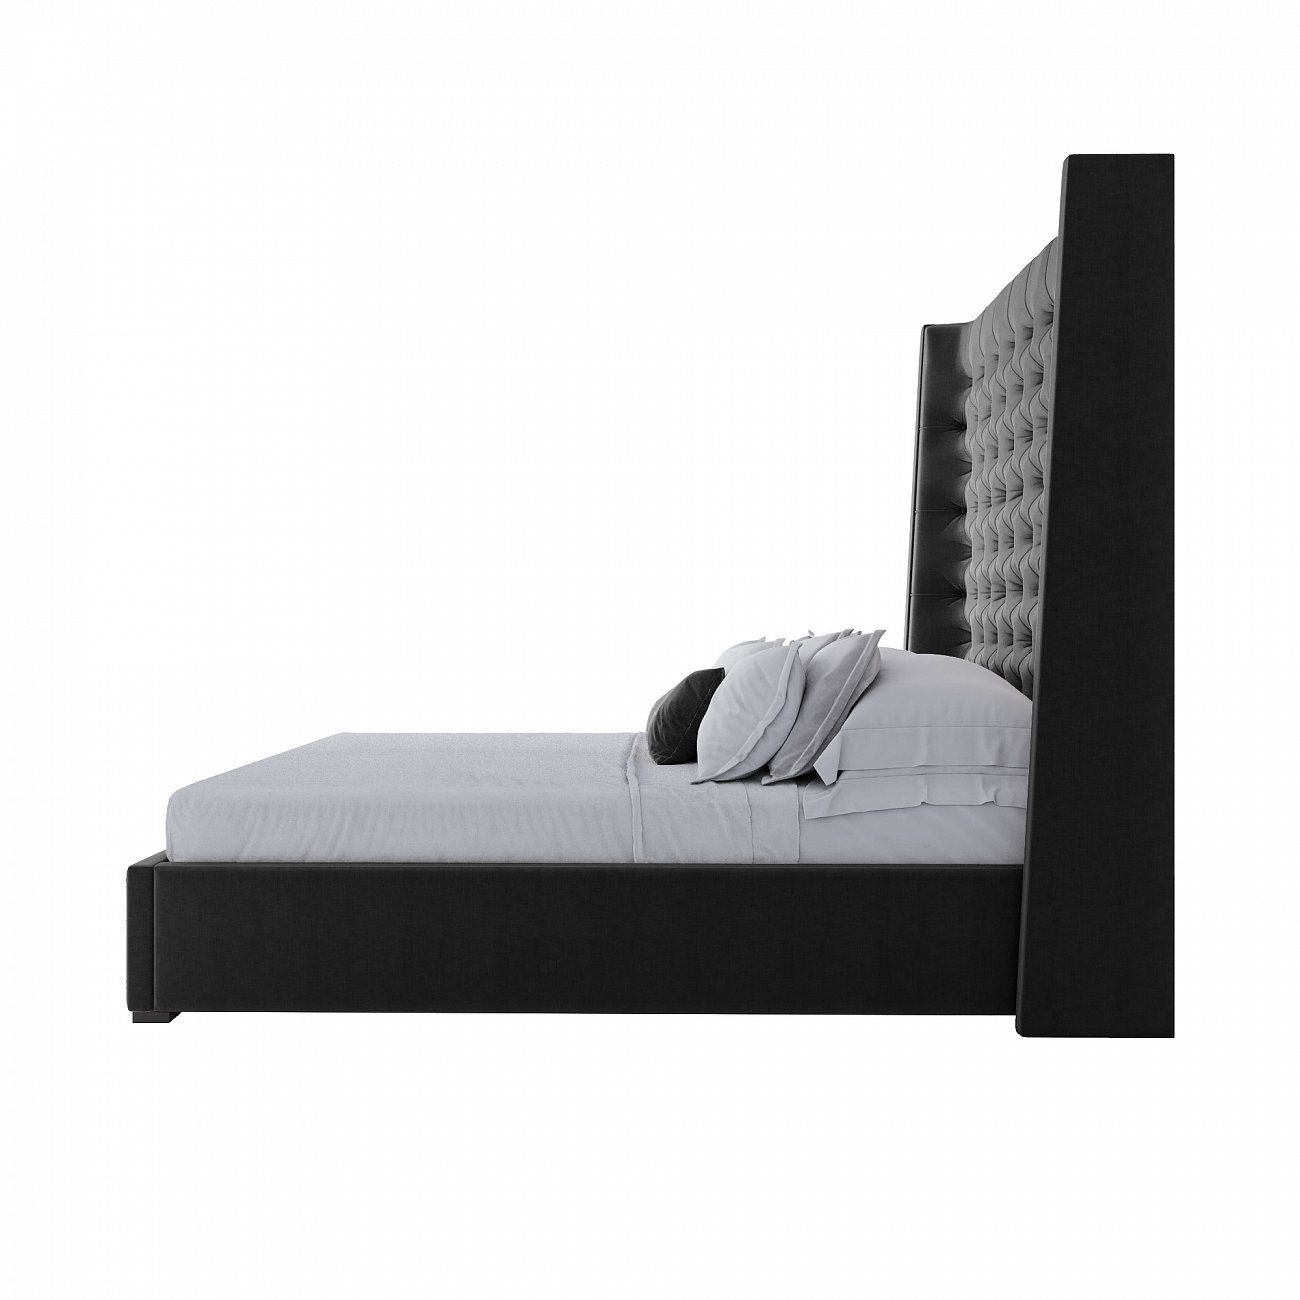 Кровать двуспальная с мягким изголовьем 160х200 см черная Jackie King